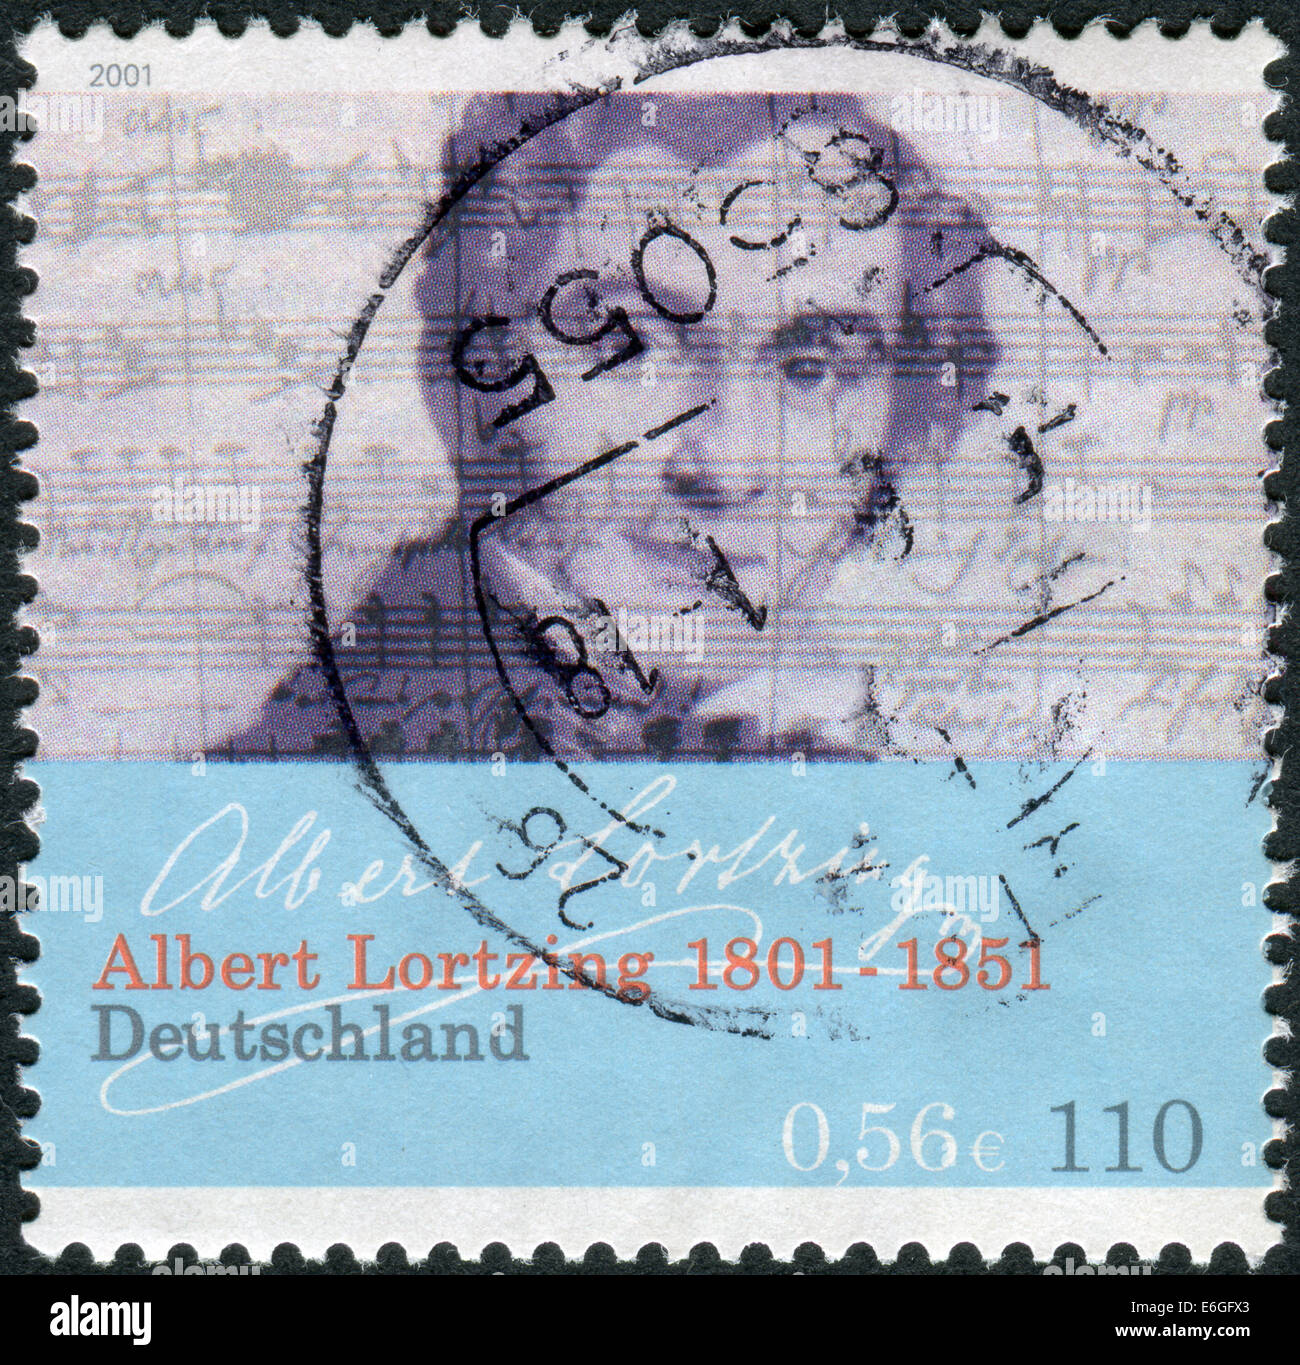 Stempel in Deutschland gedruckt, gewidmet dem 200. Jahrestag der Geburt, der Komponist, Schauspieler und Sänger Gustav Albert Lortzing Stockfoto